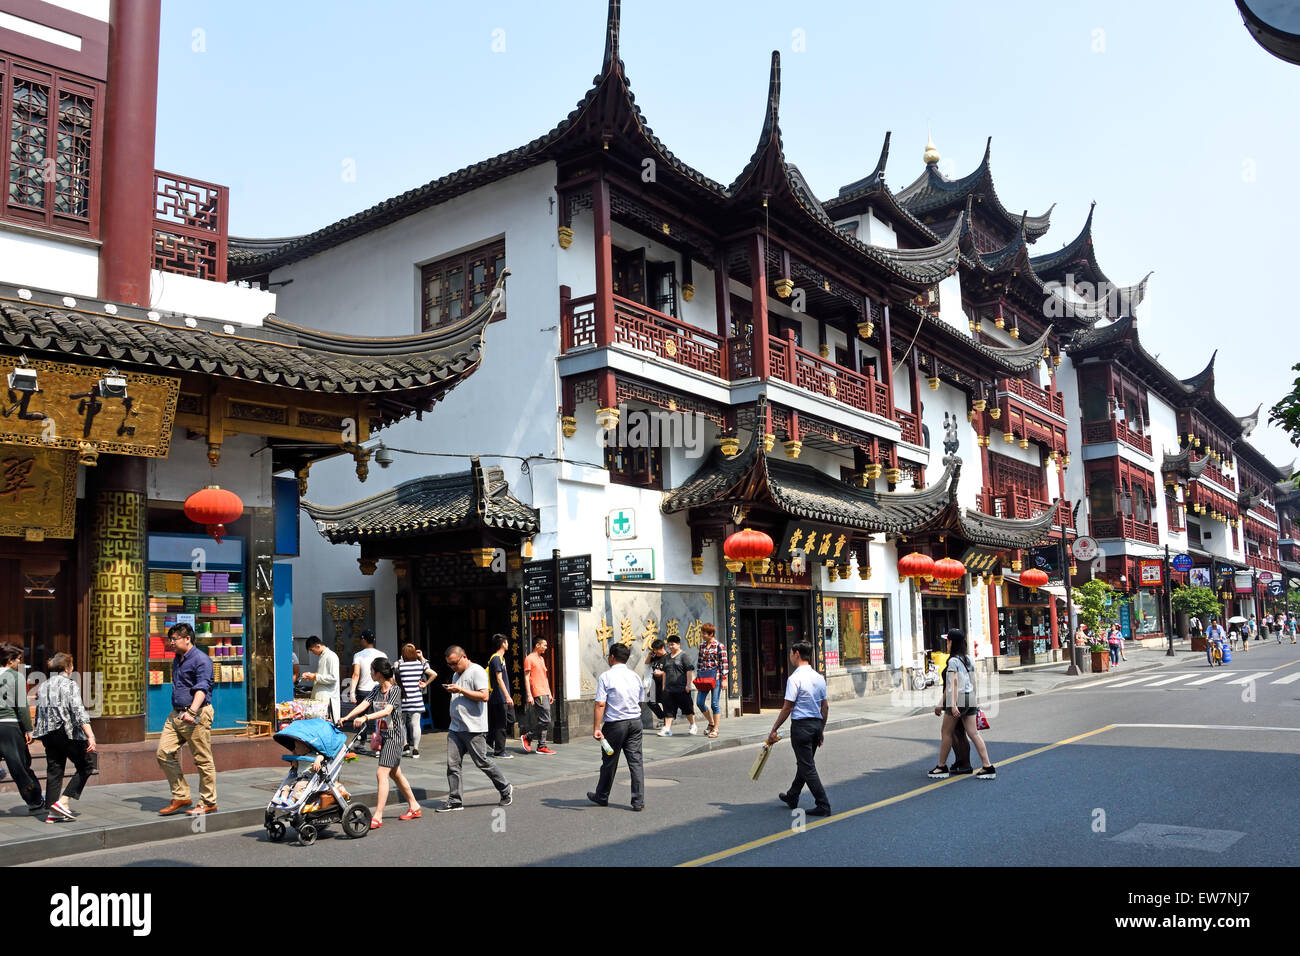 Le Jardin Yuyuan Bazaar bâtiments fondée par la dynastie Ming famille Pan ' vieille ville chinoise ' zone commerçante de Shanghai ( Chine ) l'architecture chinoise Classique Banque D'Images